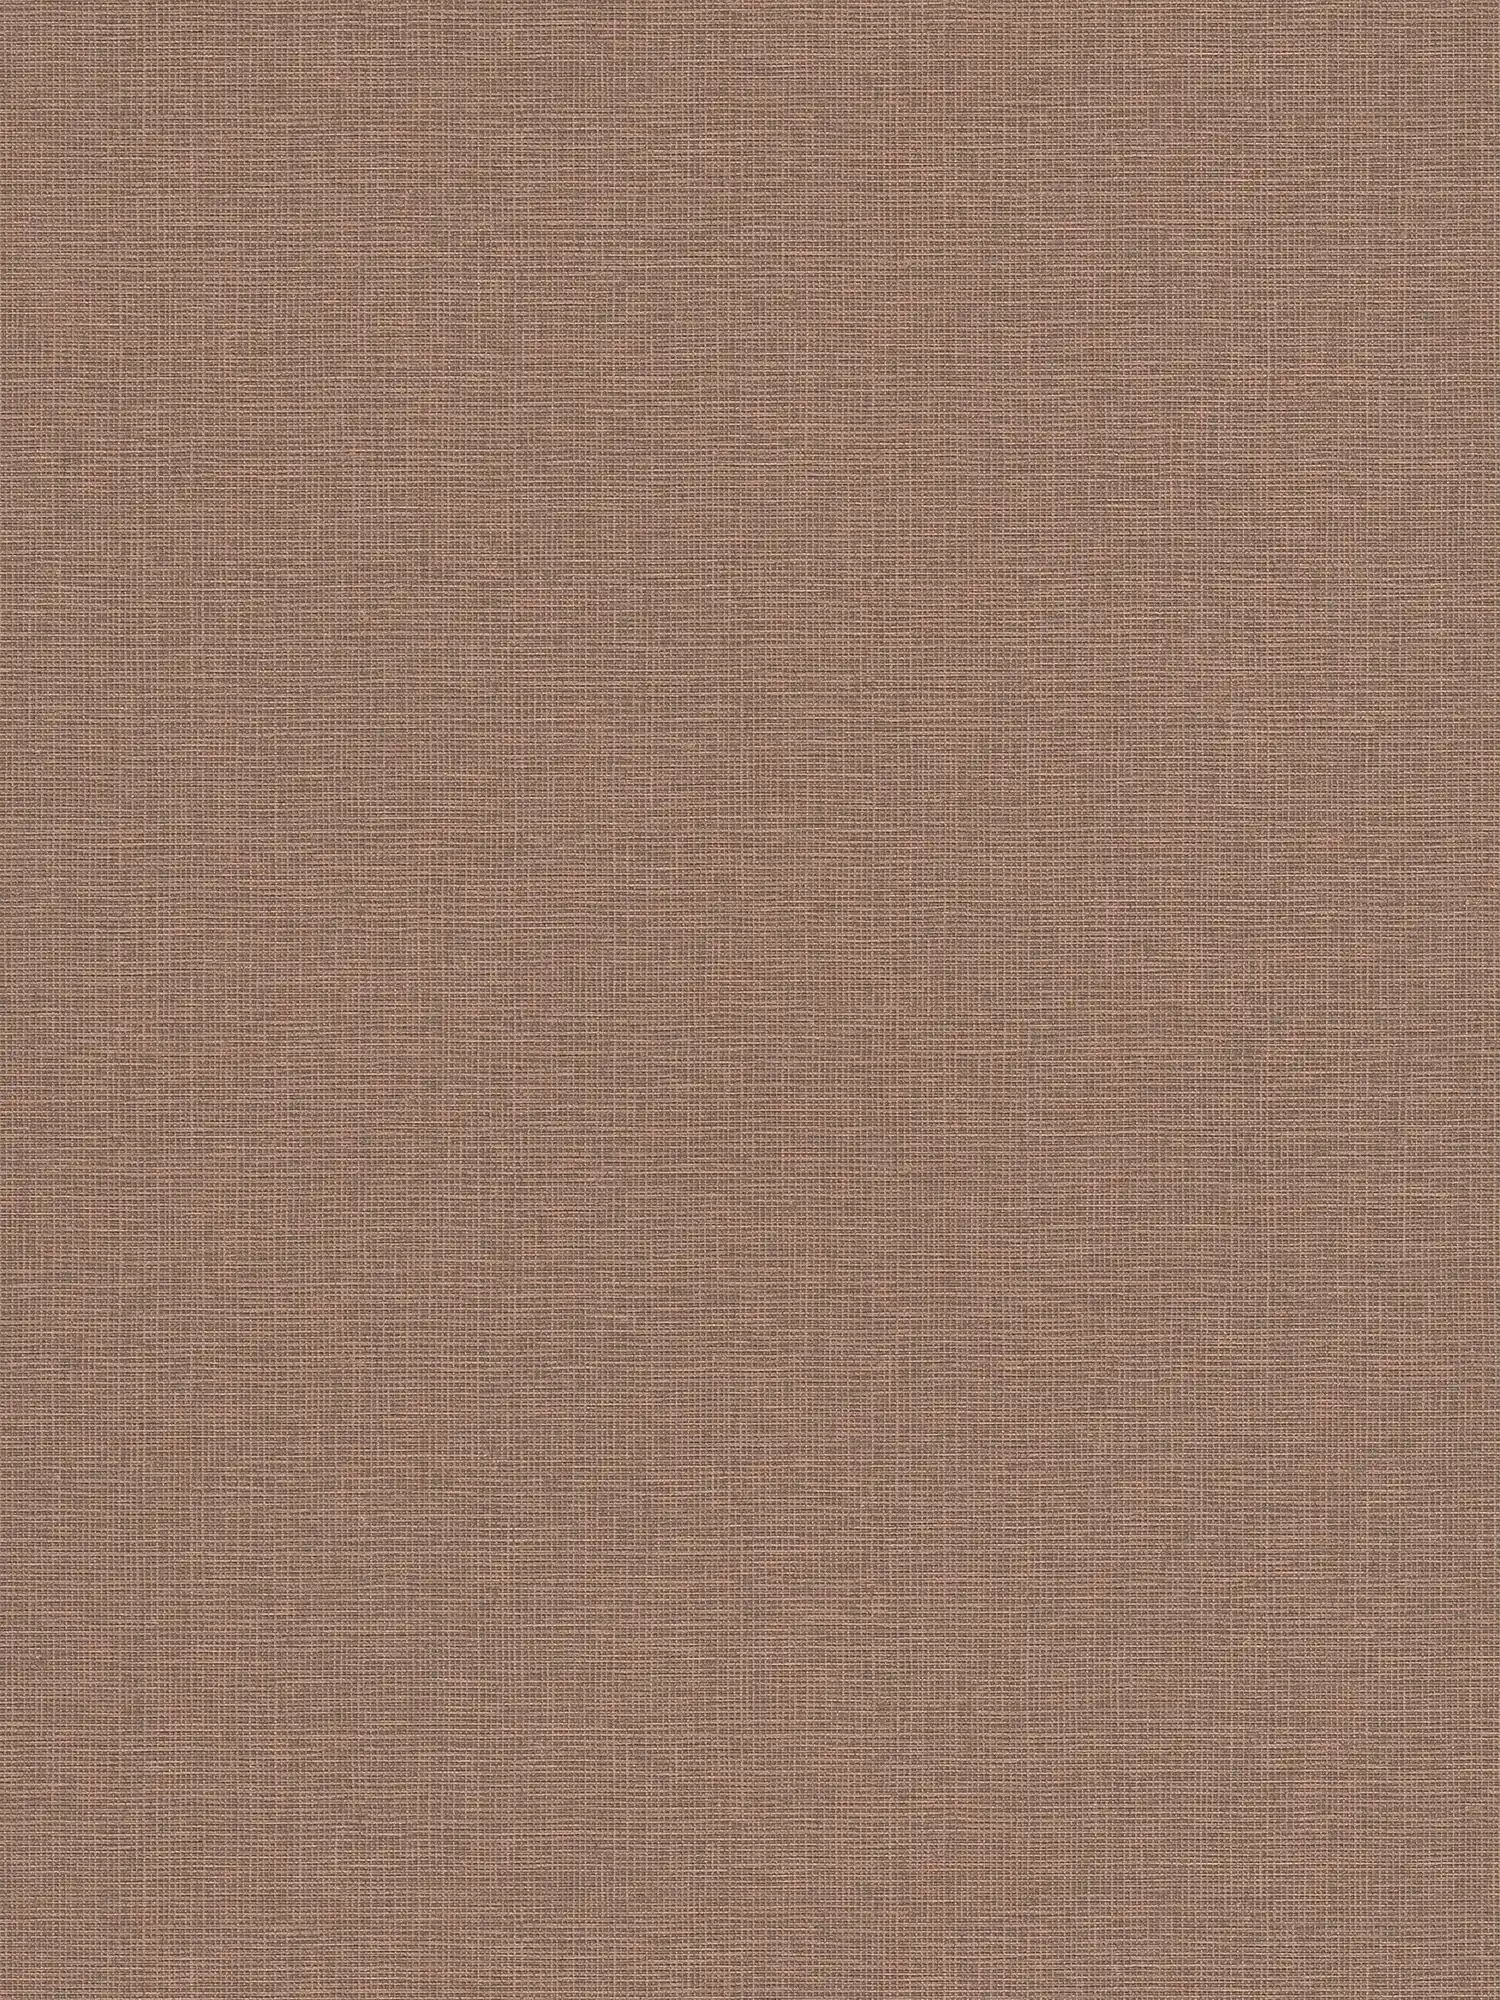 Papel pintado no tejido liso con estructura de lino - marrón
